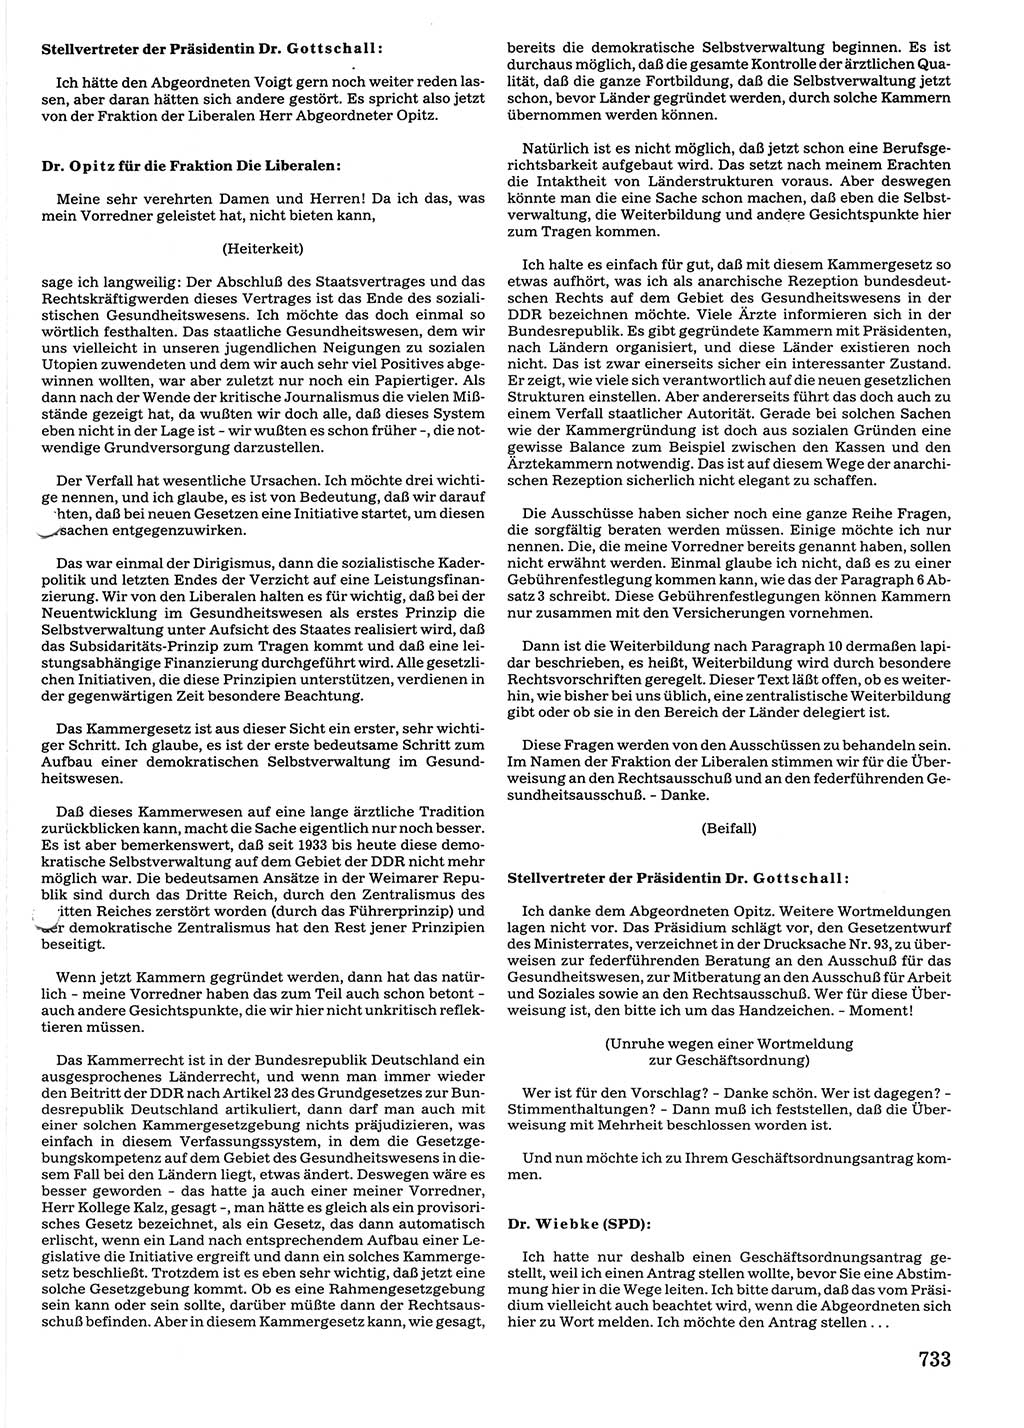 Tagungen der Volkskammer (VK) der Deutschen Demokratischen Republik (DDR), 10. Wahlperiode 1990, Seite 733 (VK. DDR 10. WP. 1990, Prot. Tg. 1-38, 5.4.-2.10.1990, S. 733)